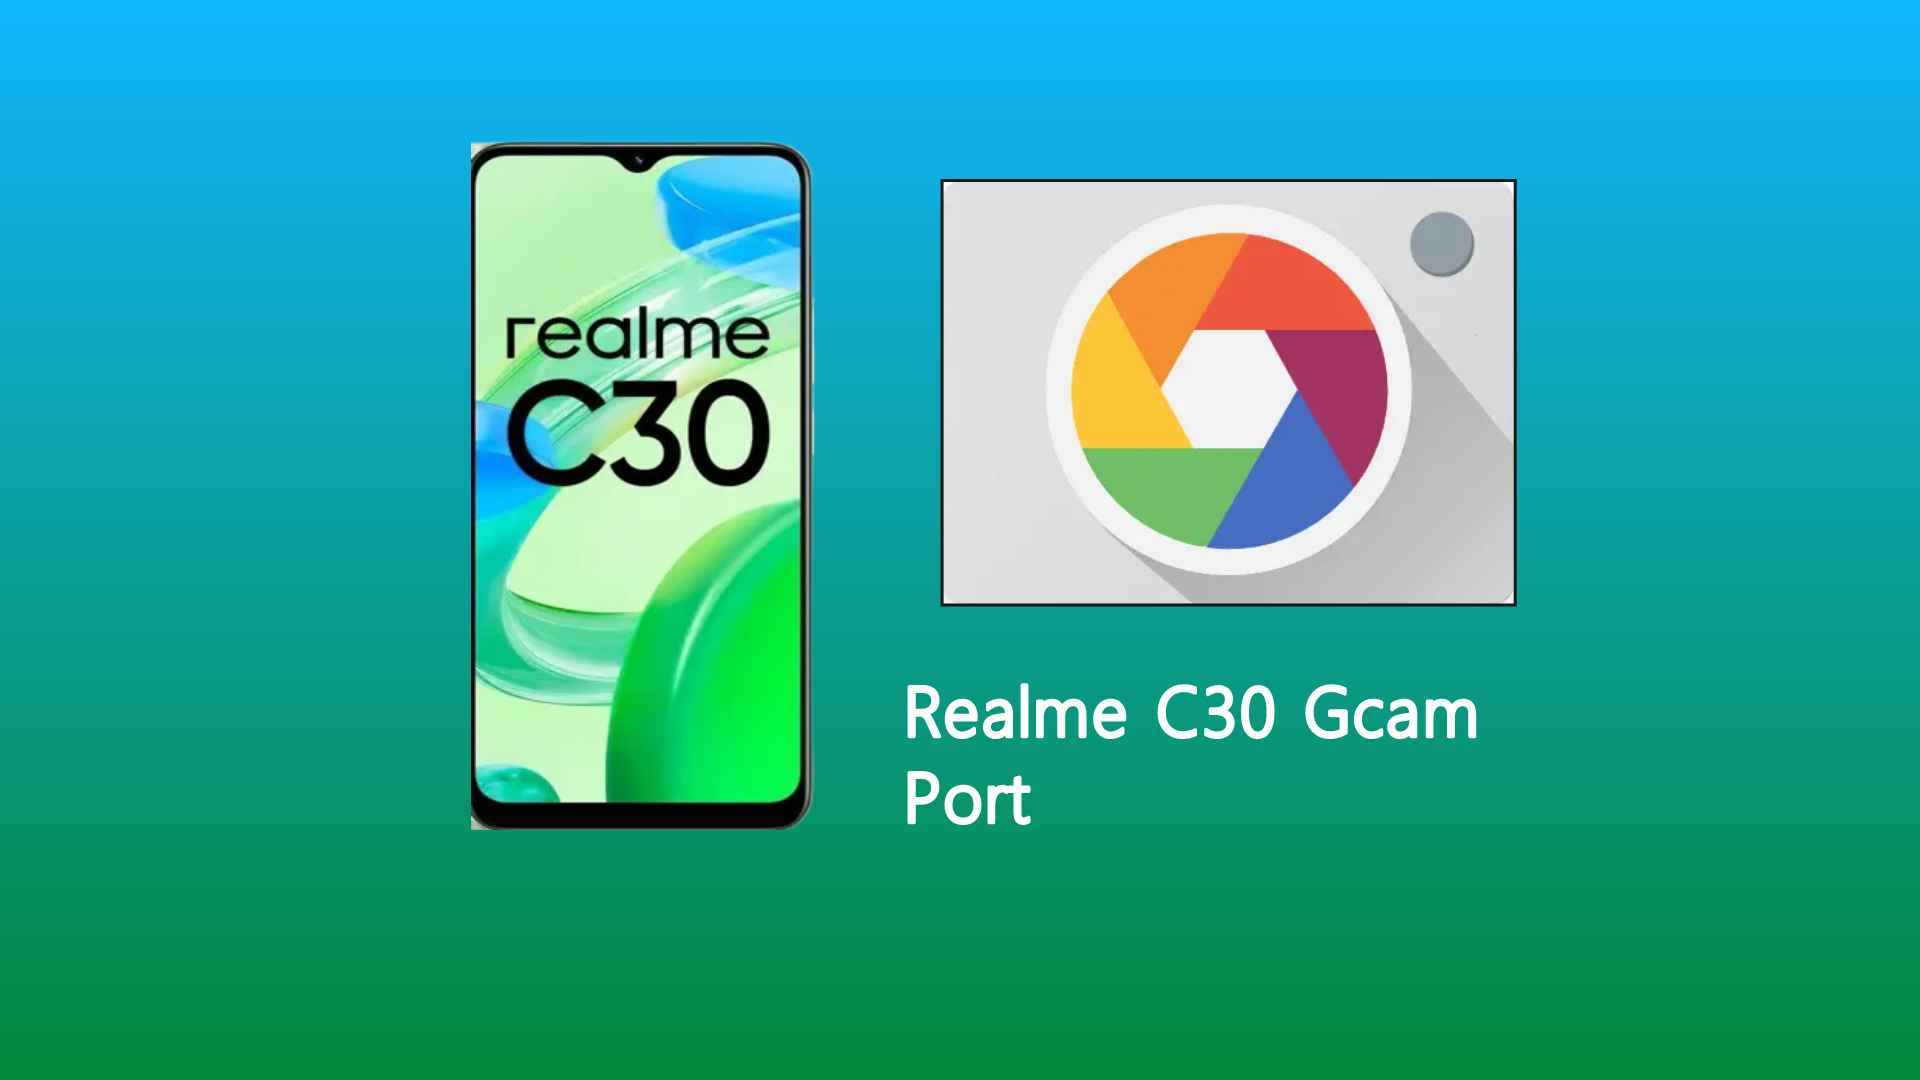 Realme C30 Gcam Port